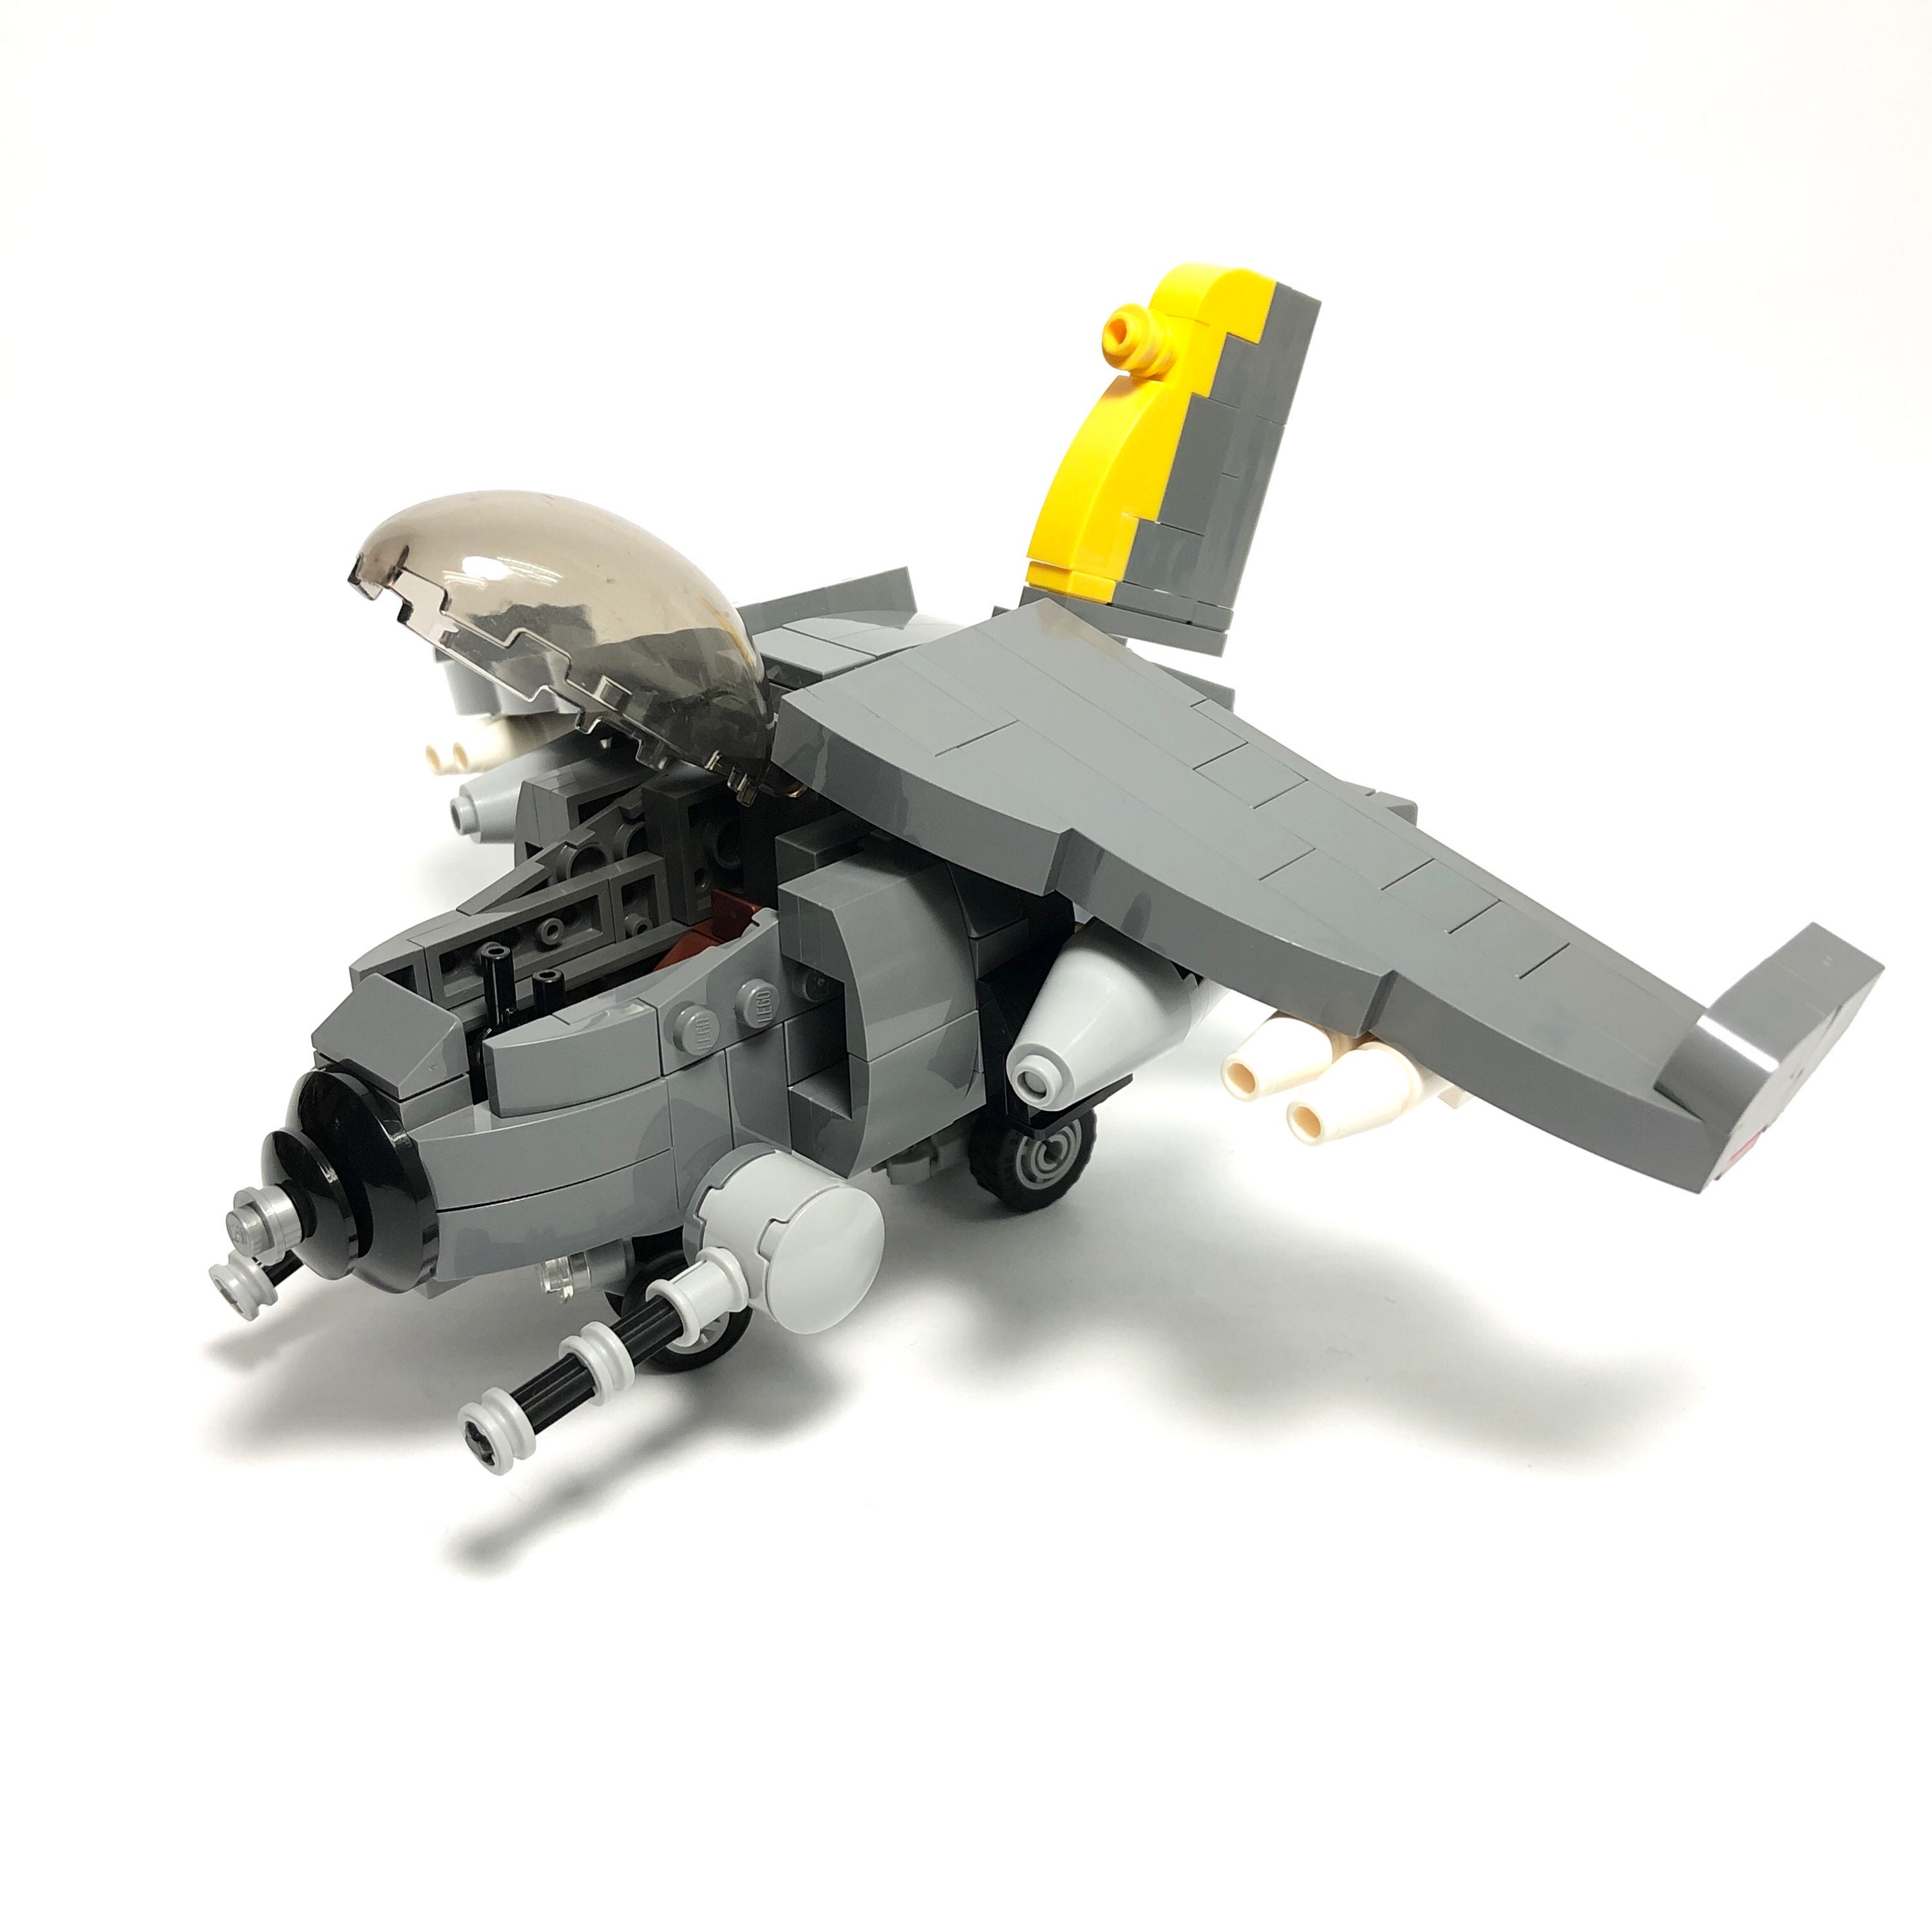 Coche en LEGO Fortnite: cómo hacer y operar